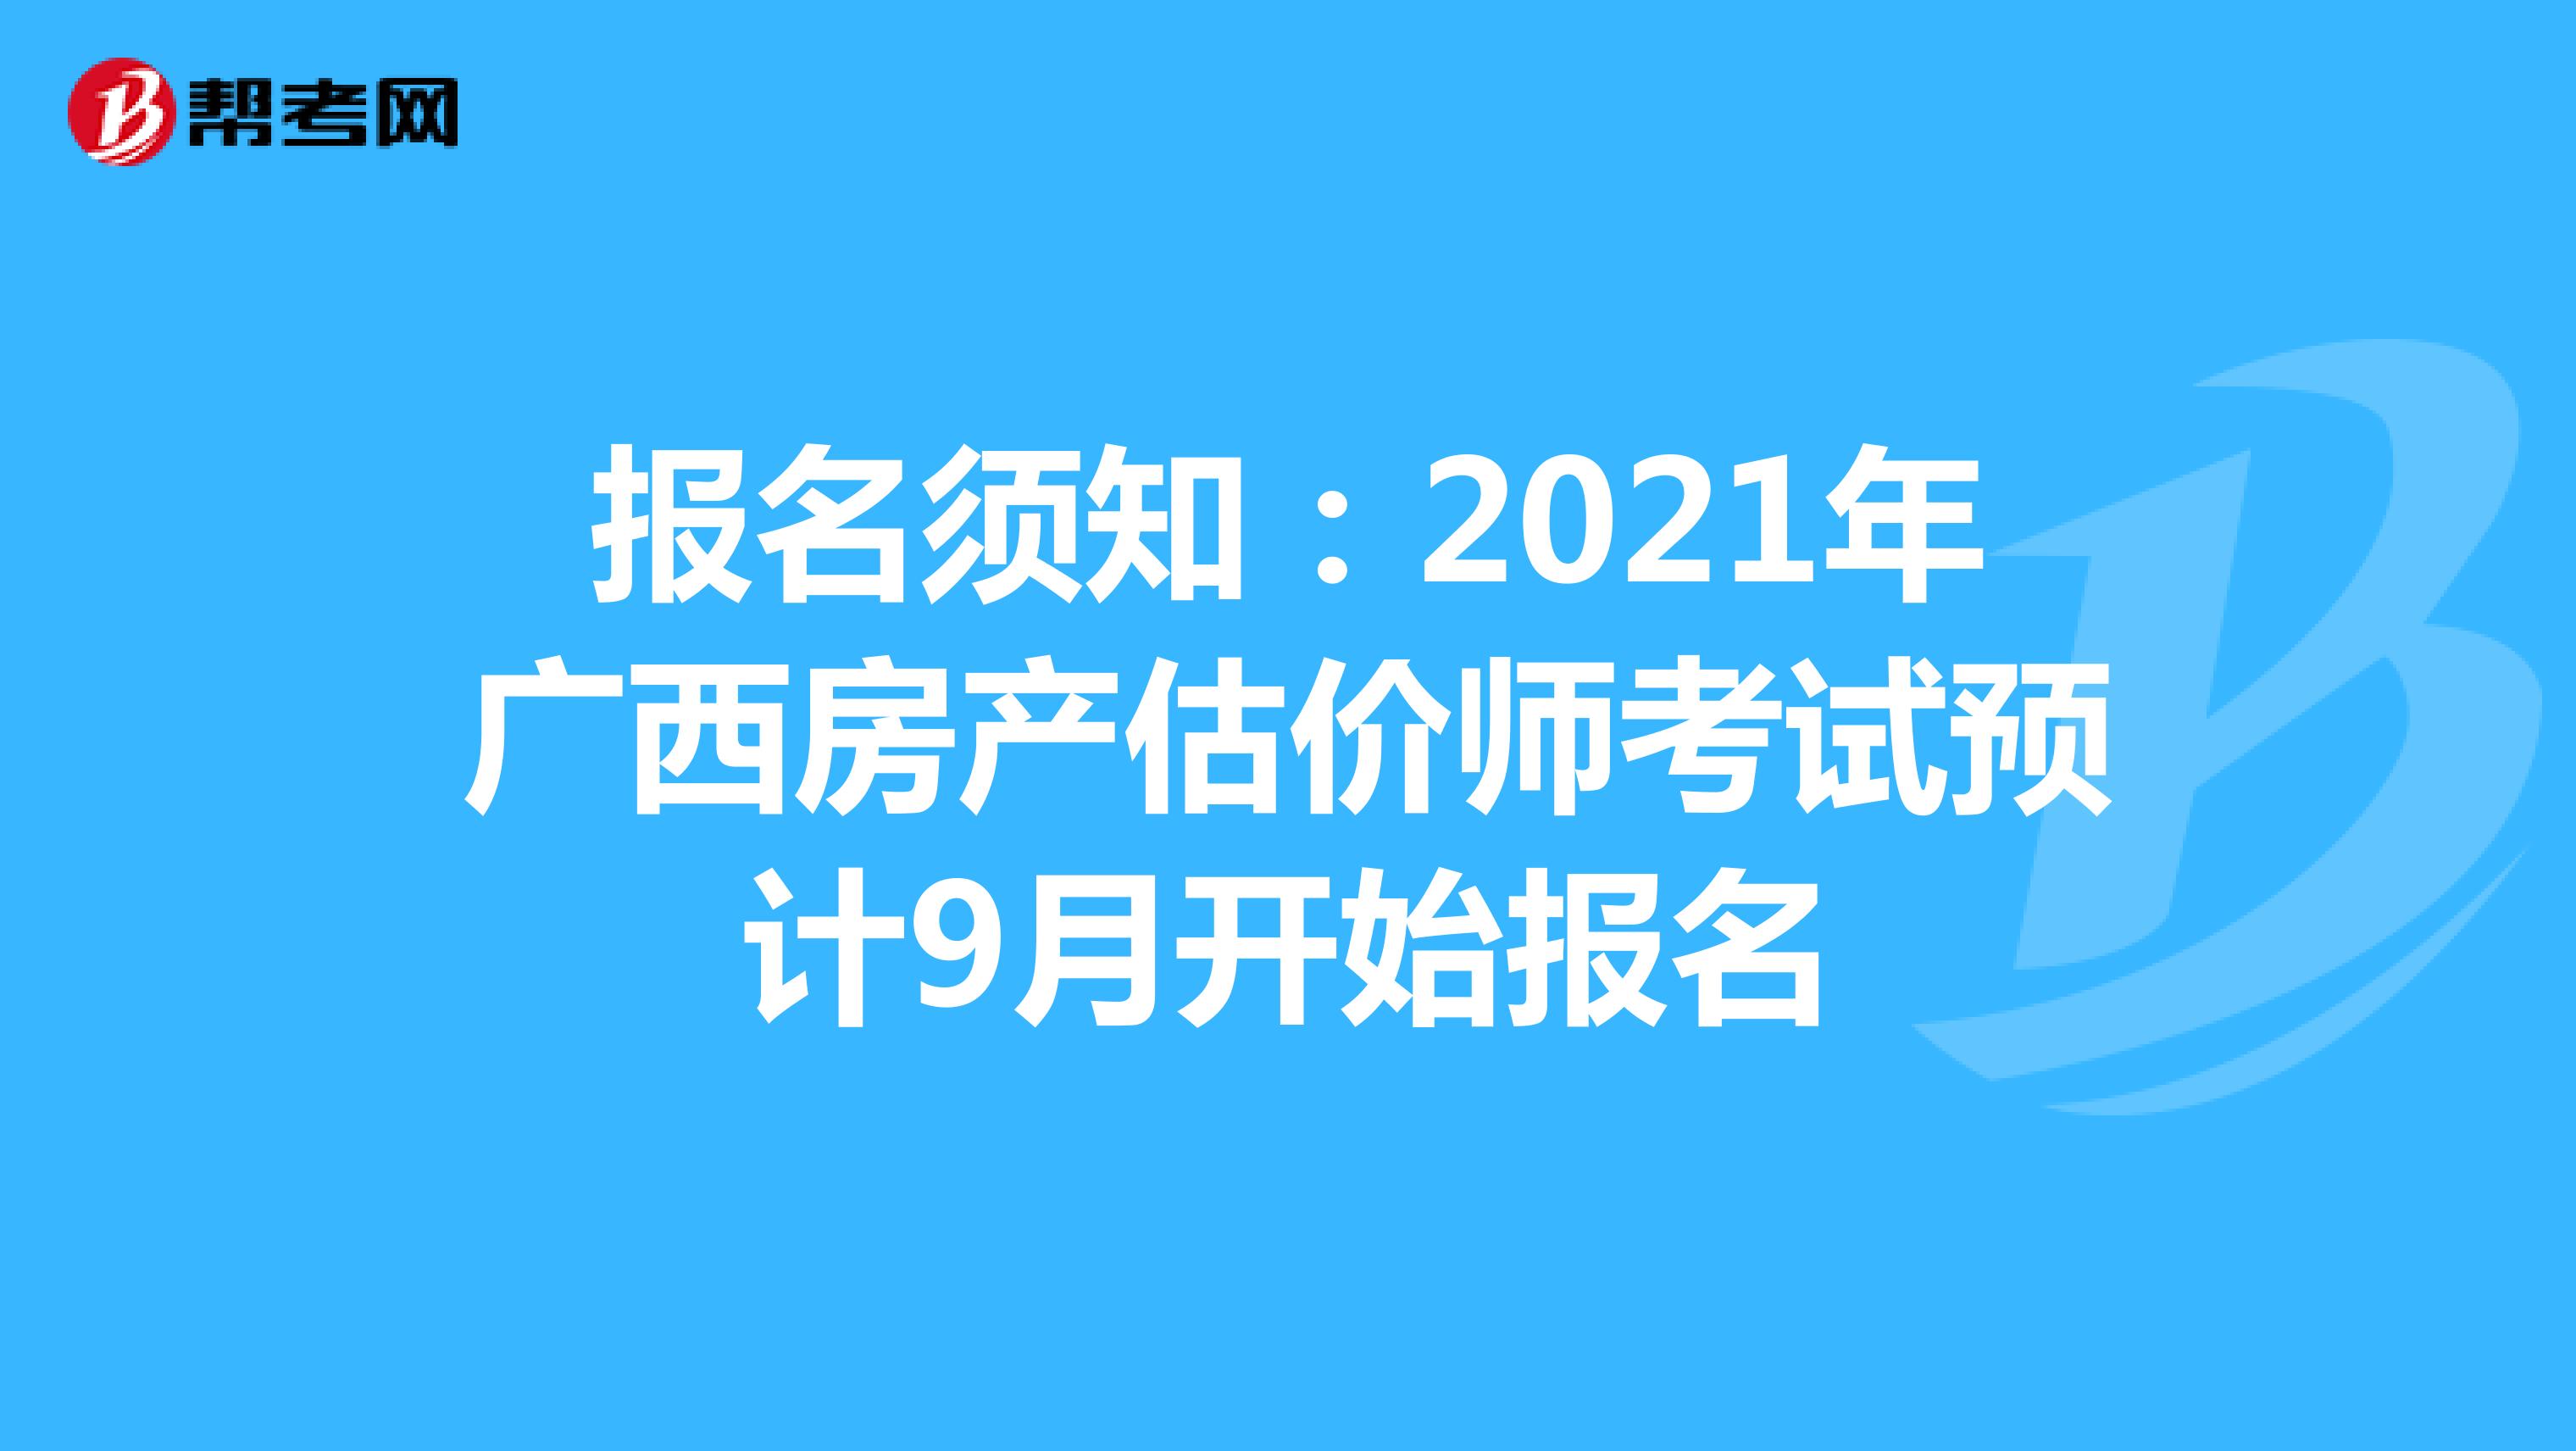 报名须知：2021年广西房产估价师考试预计9月开始报名